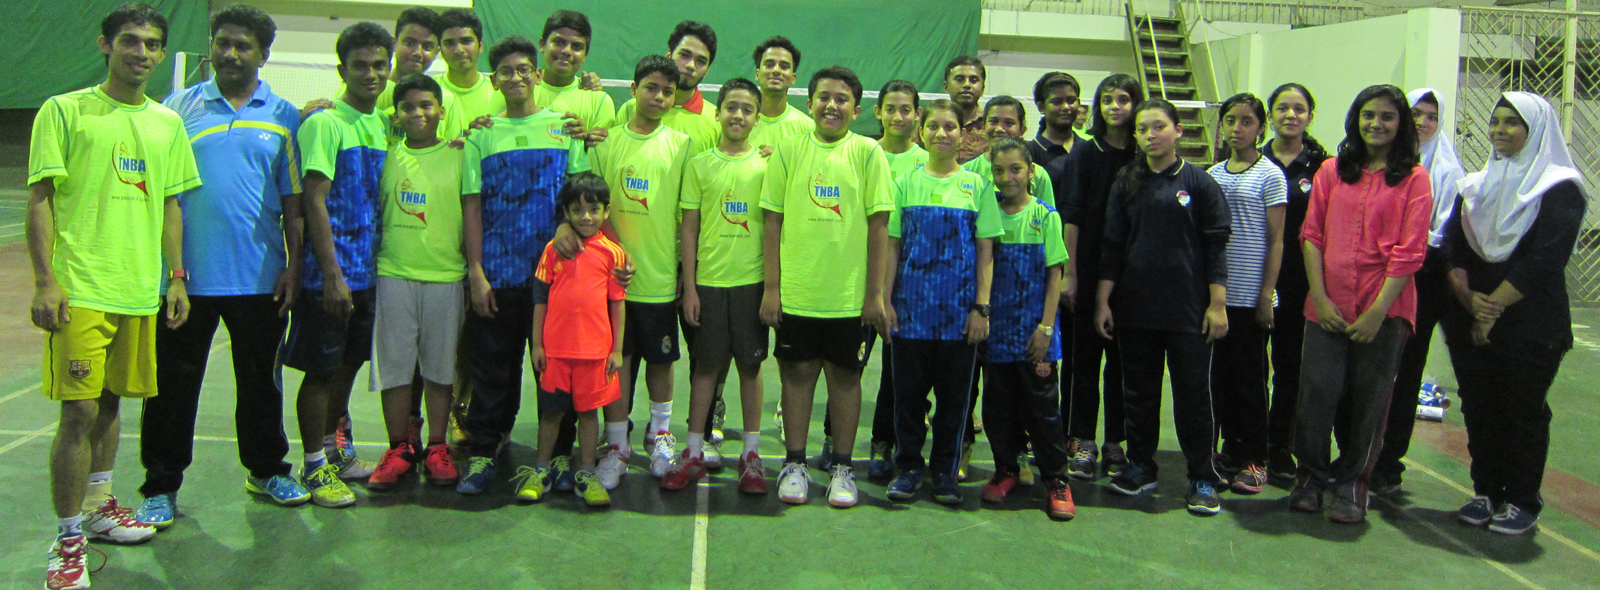 Tim Nikhil Badminton Academys